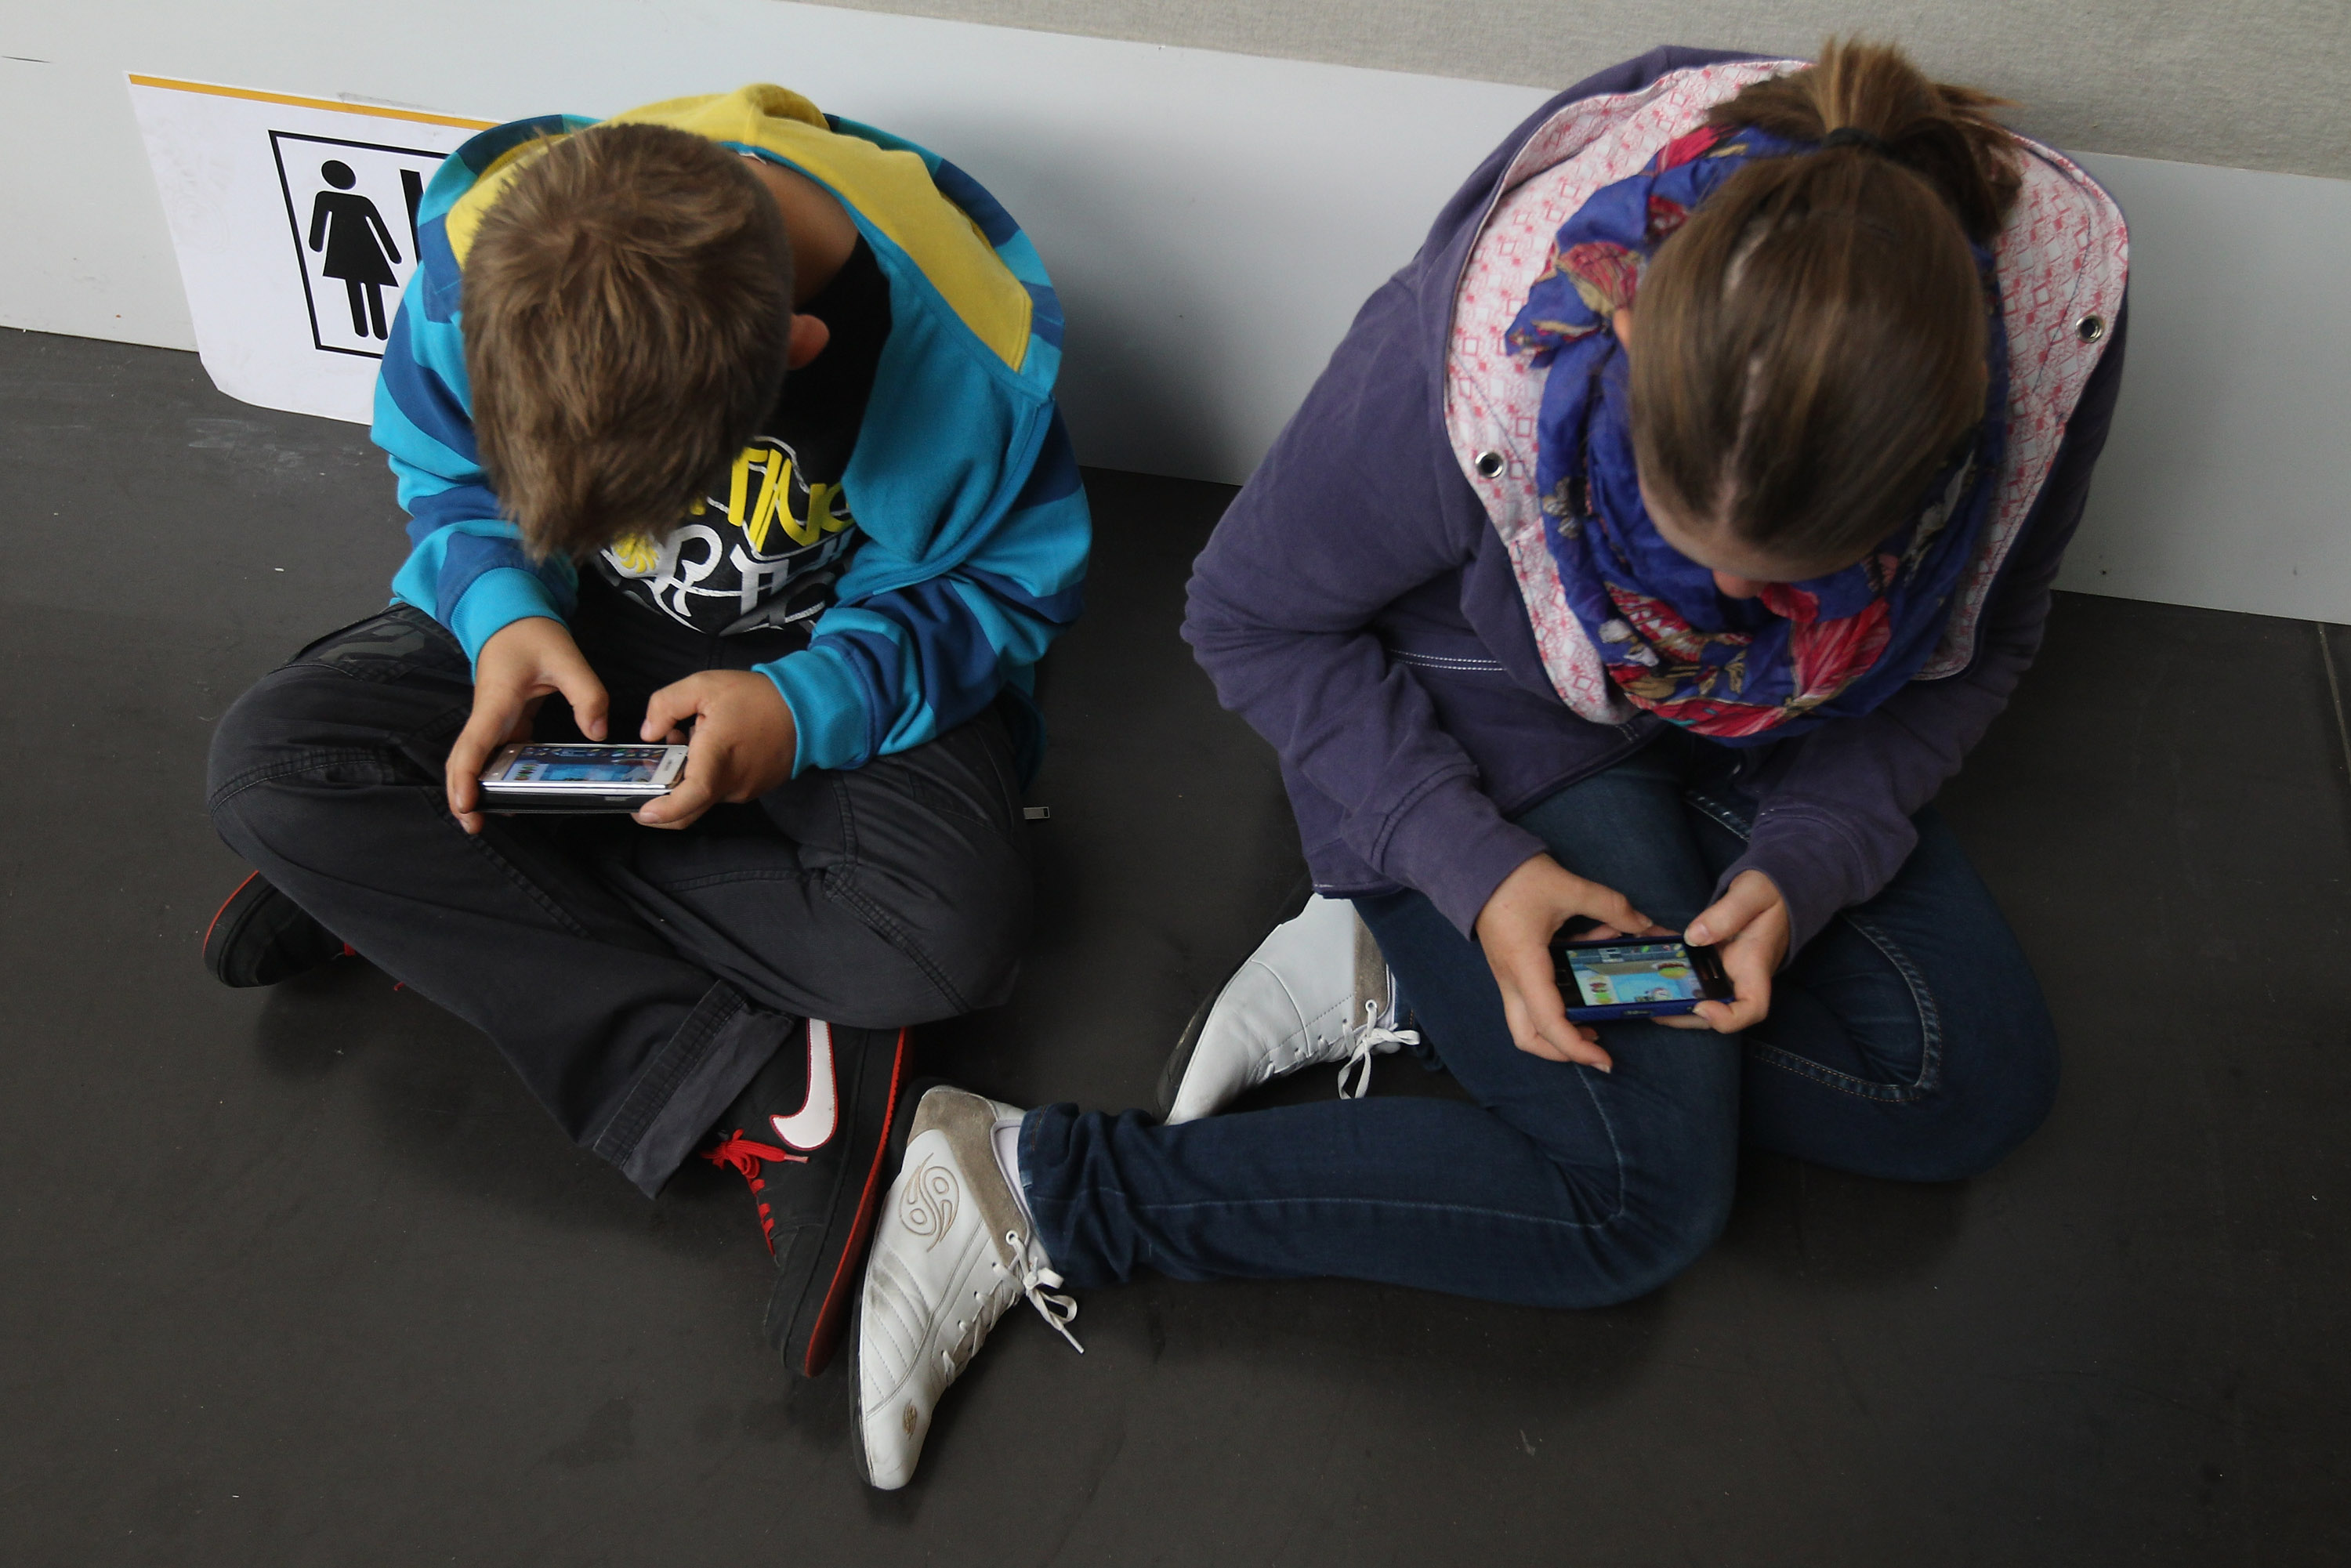 Umfrage: Smartphone hat mehr Einfluss auf Kinder als Eltern